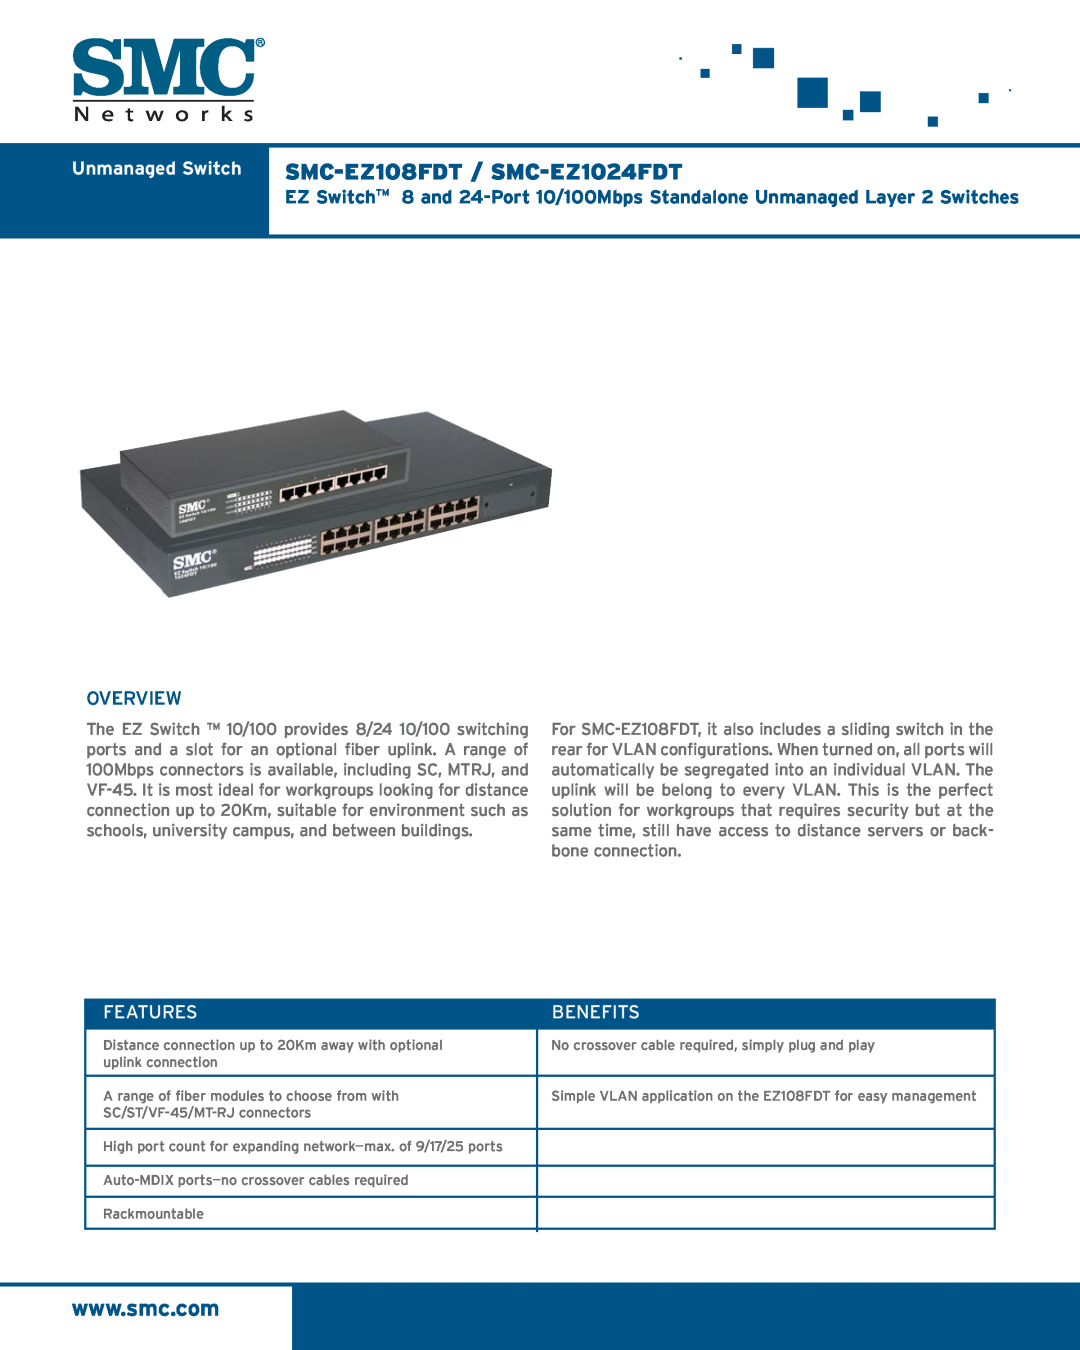 SMC Networks manual Unmanaged Switch SMC-EZ108FDT / SMC-EZ1024FDT, Overview, Features, Benefits 